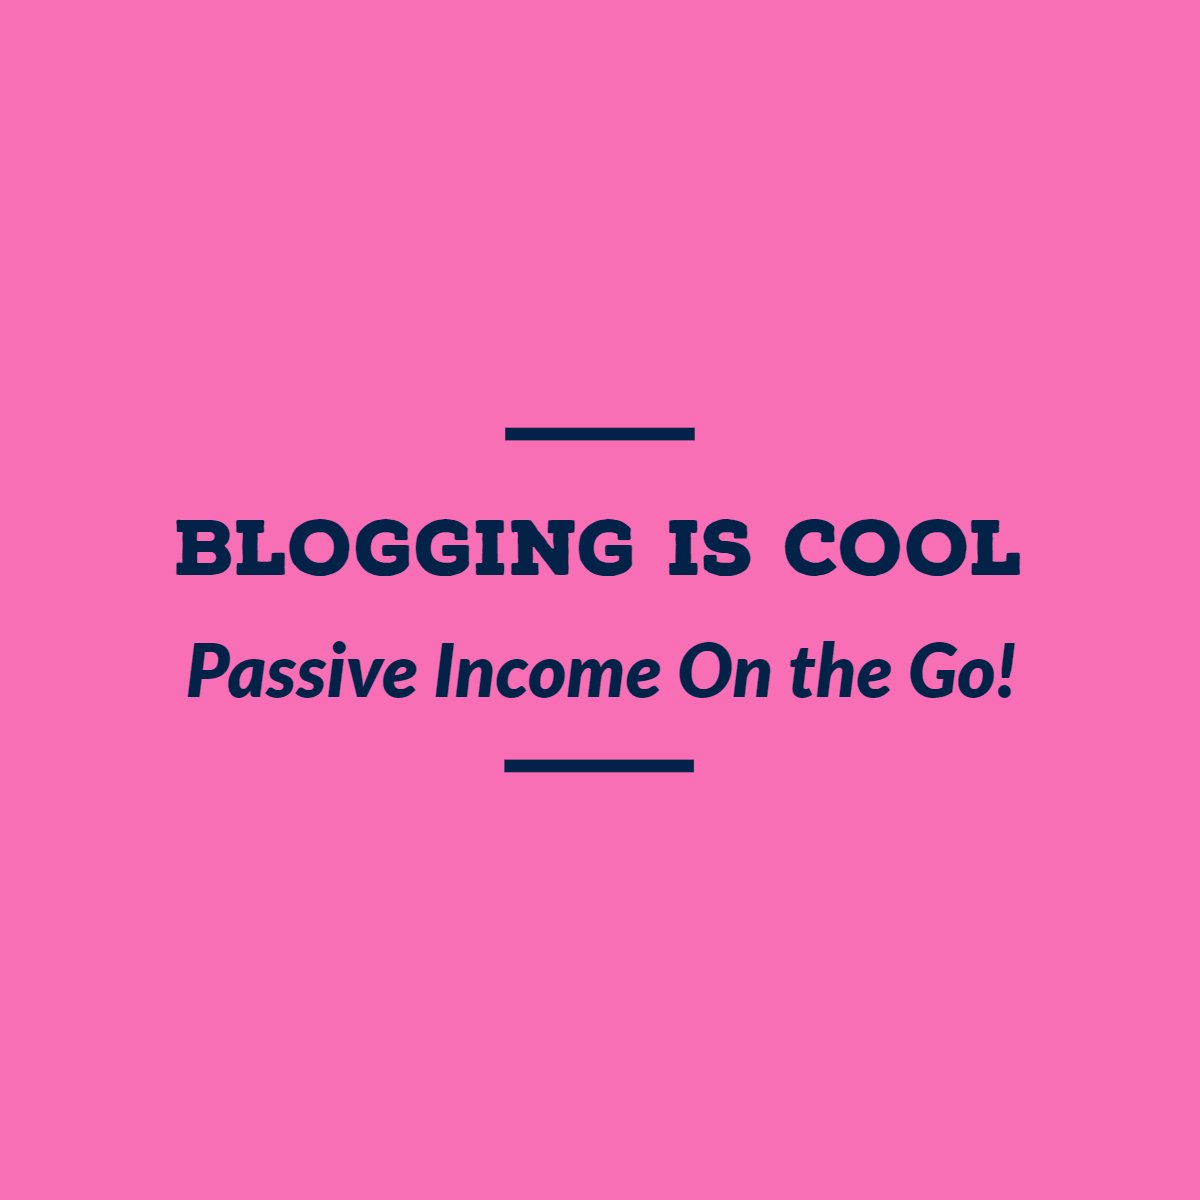 bloggingiscool.com start blogging guide